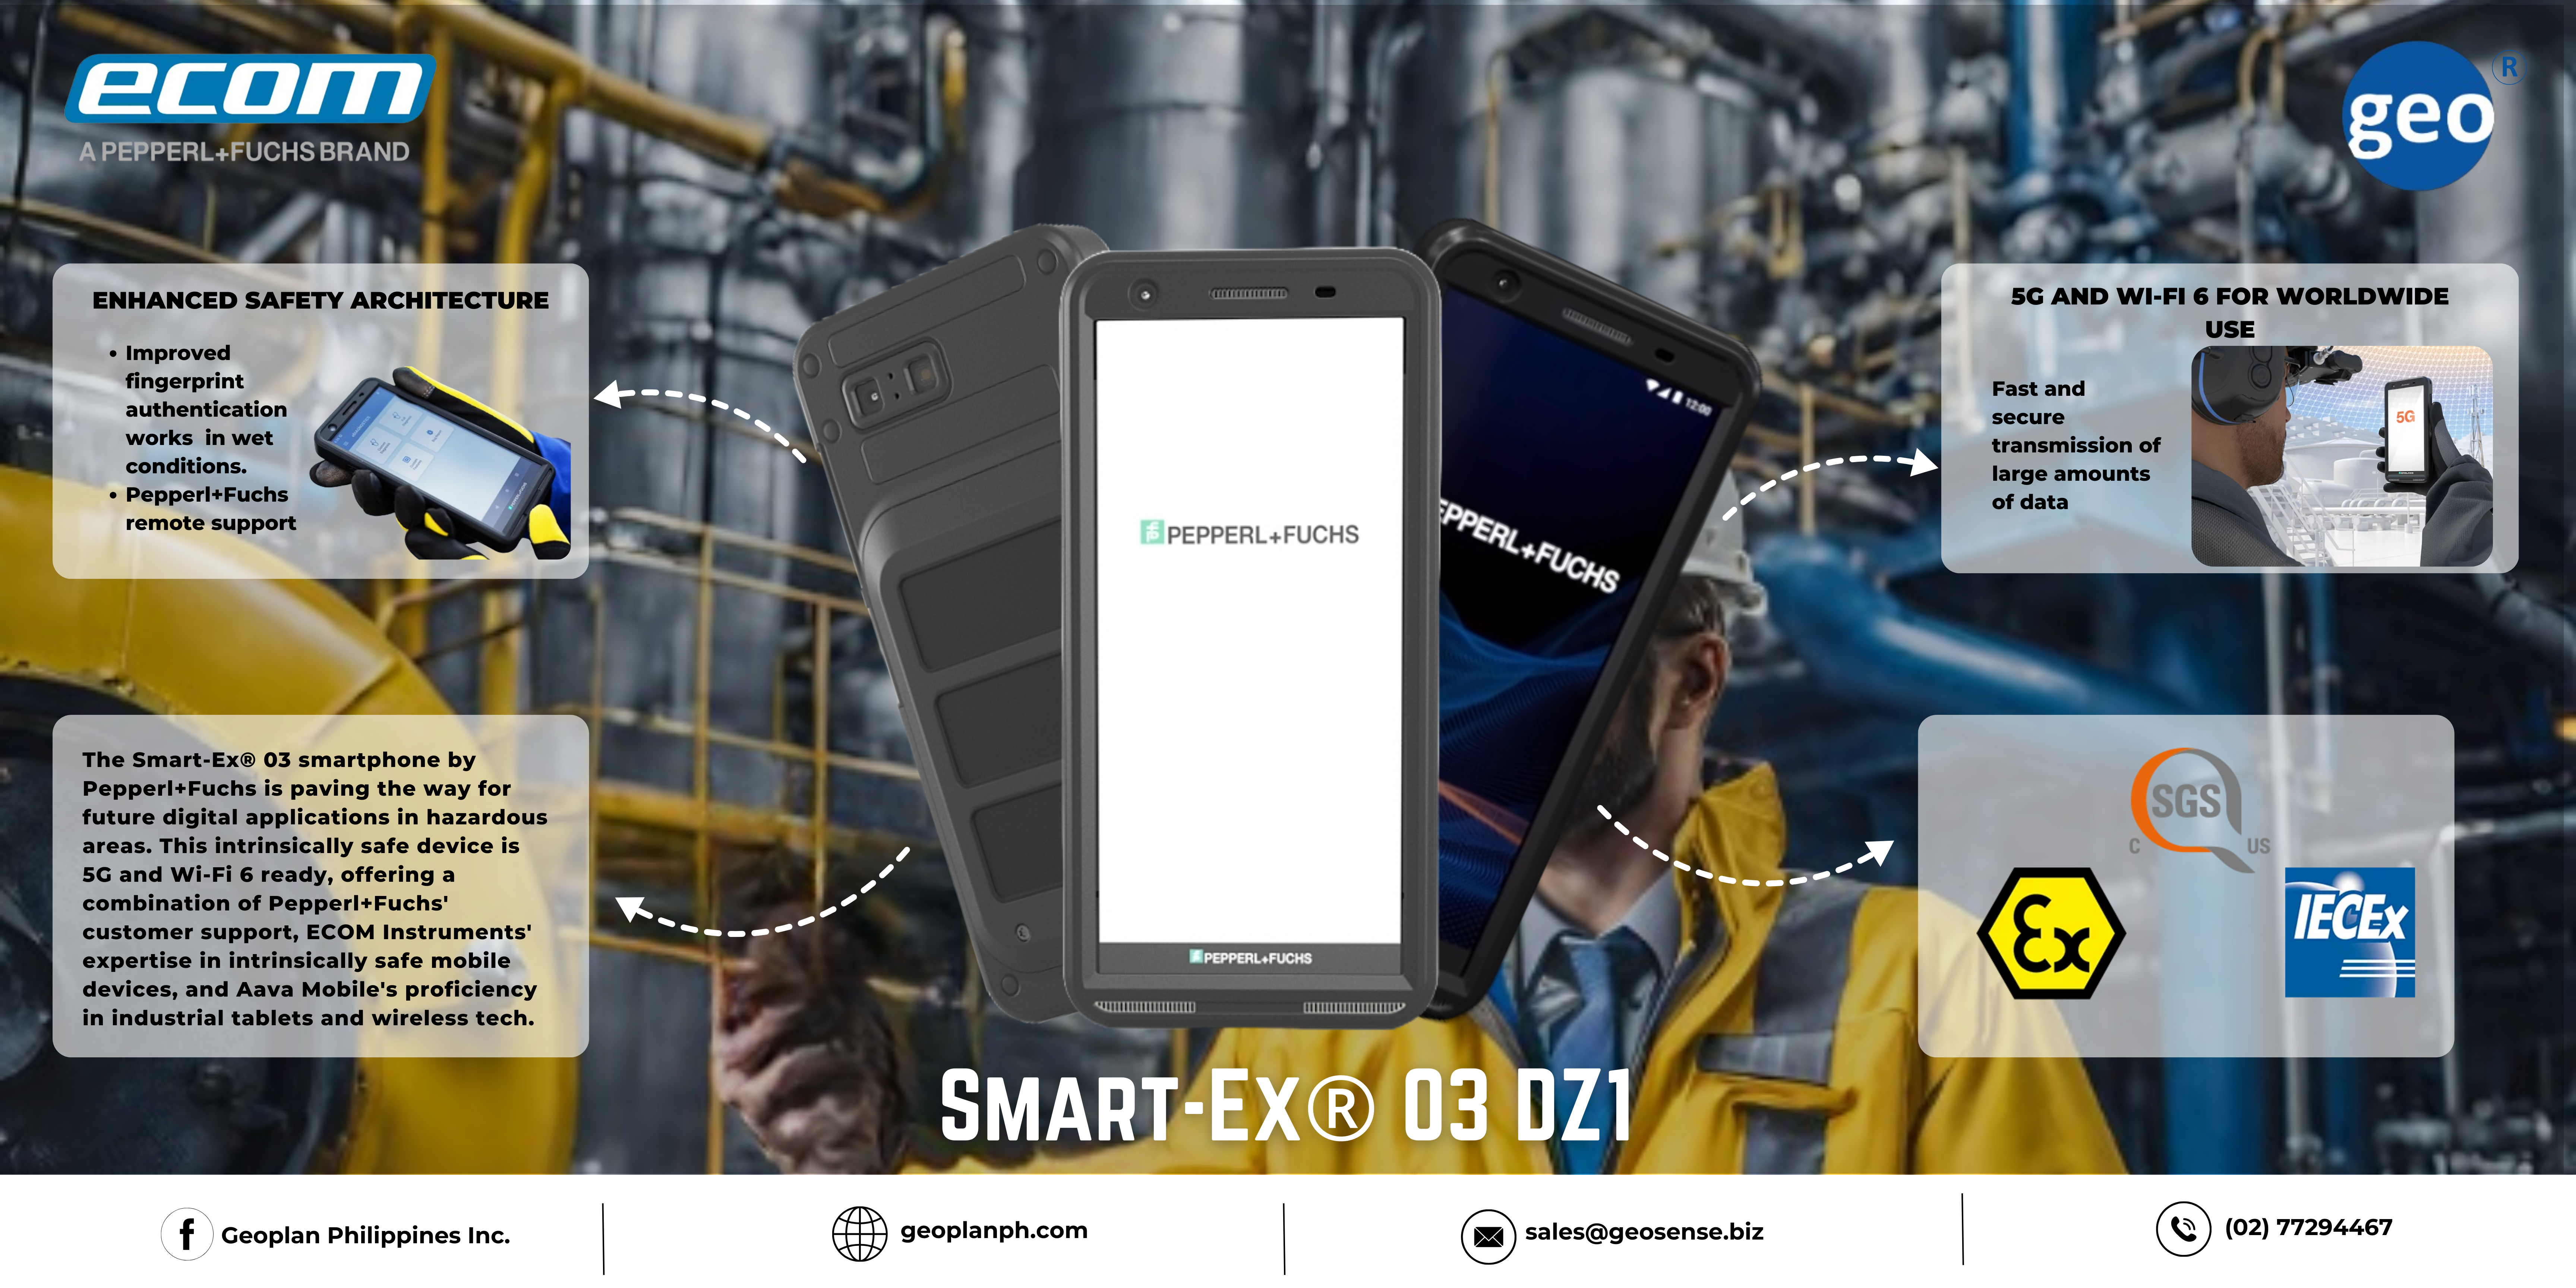 Ecom: Smart-Ex® 03 DZ1 the 5G Smartphone for Hazardous Areas